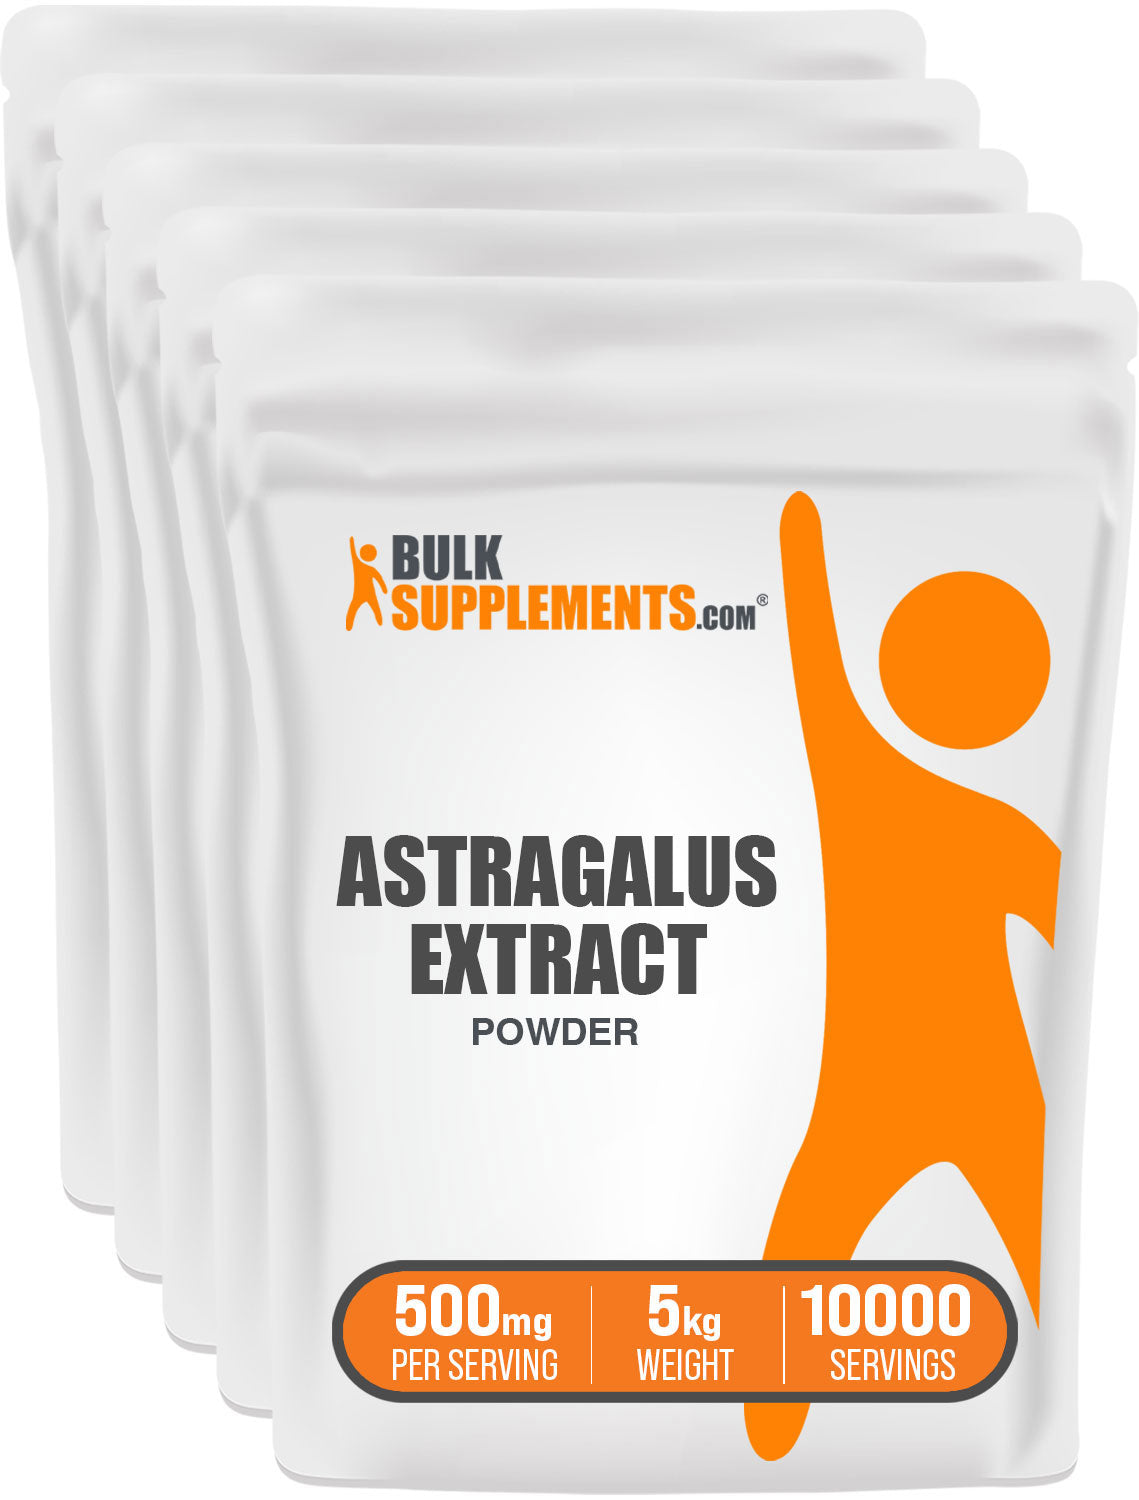 BulkSupplements.com Astragalus Extract Powder 5kg bags